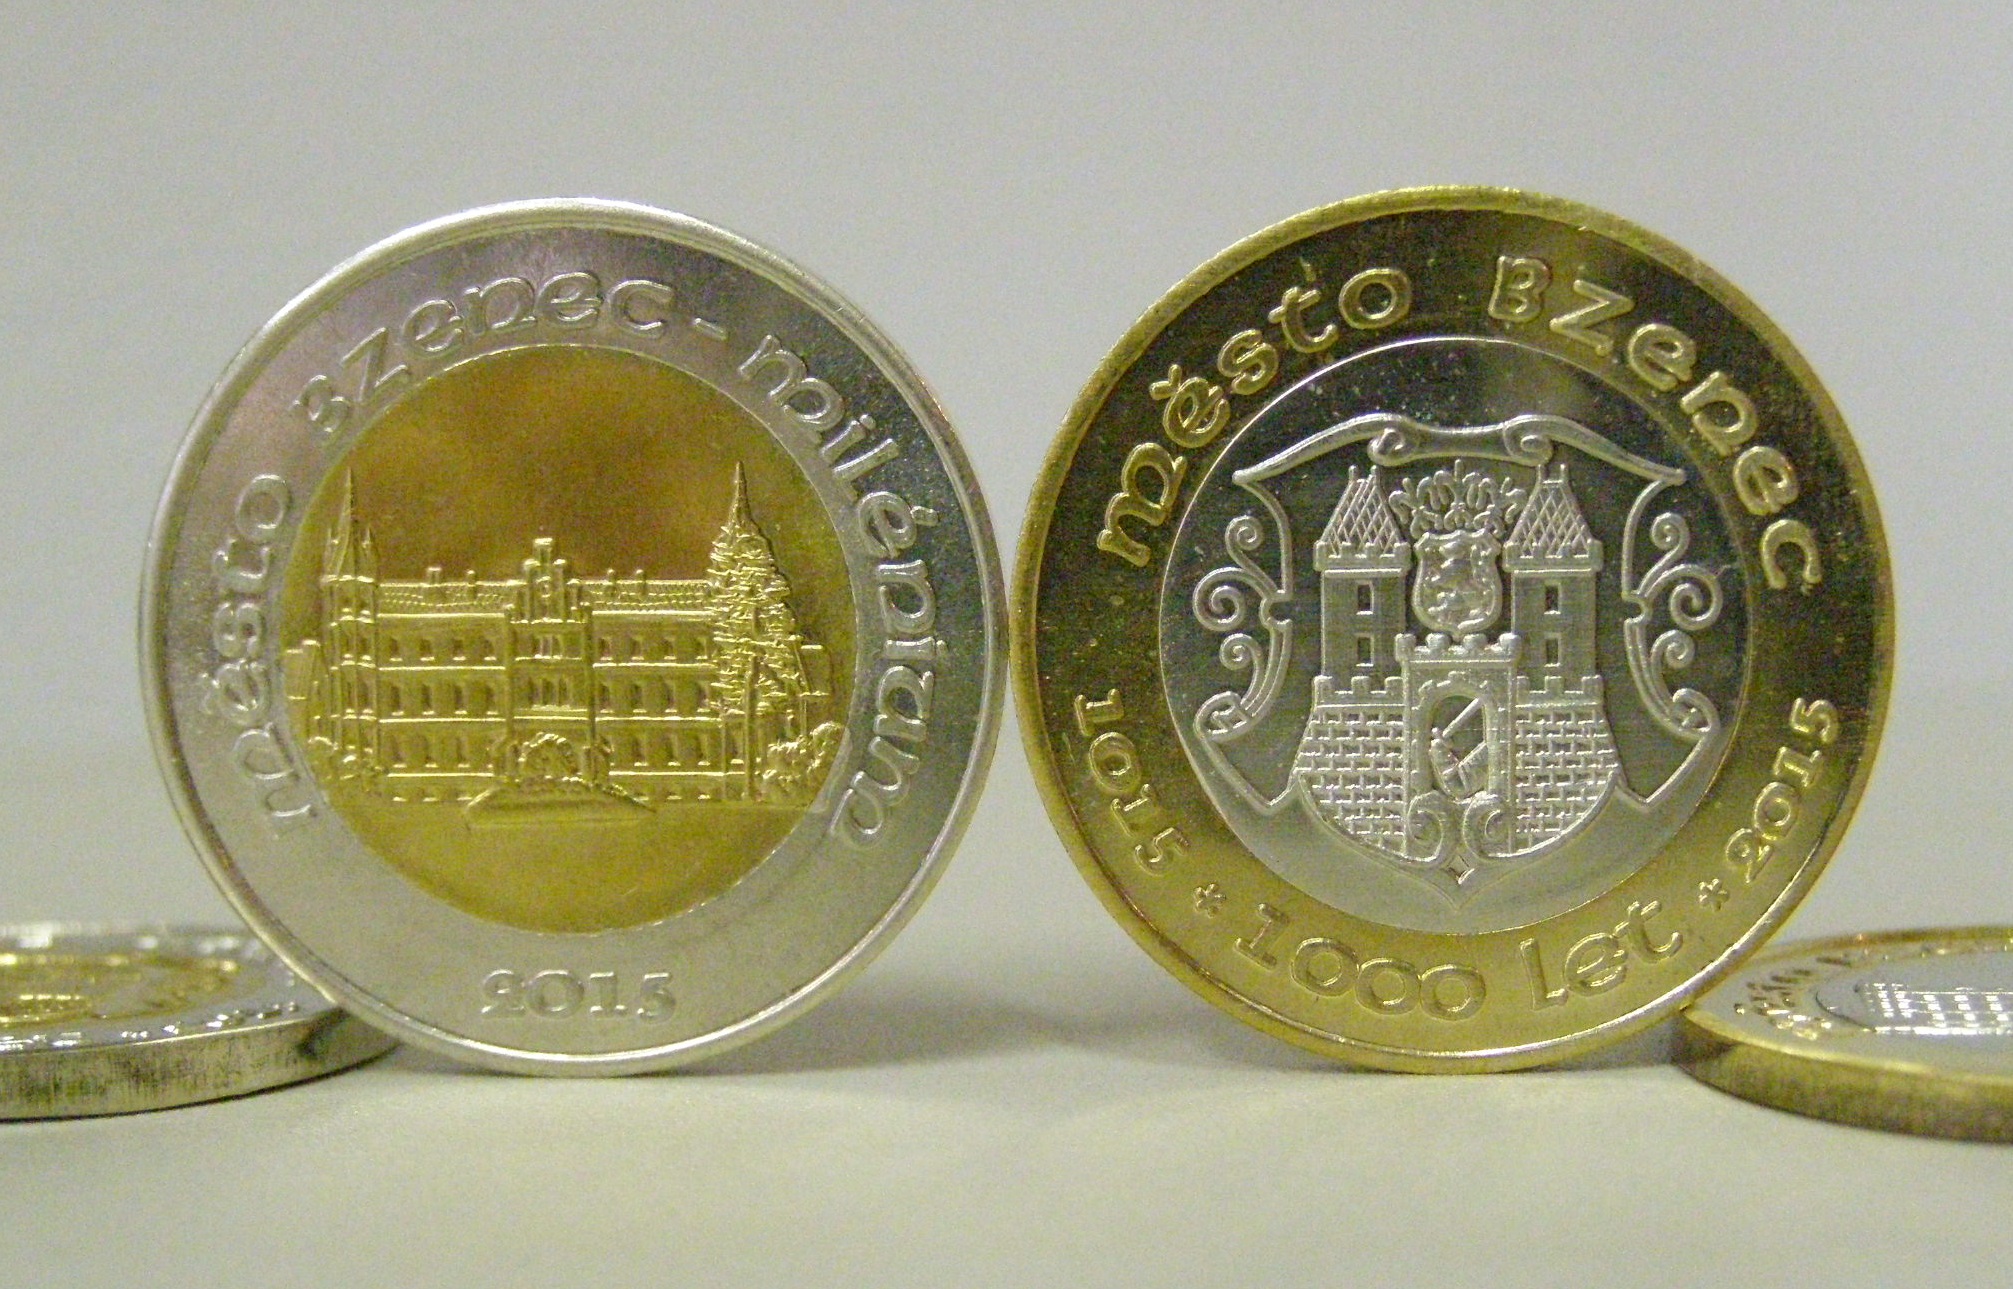 Pamětní mince 1000 let Města Bzenec